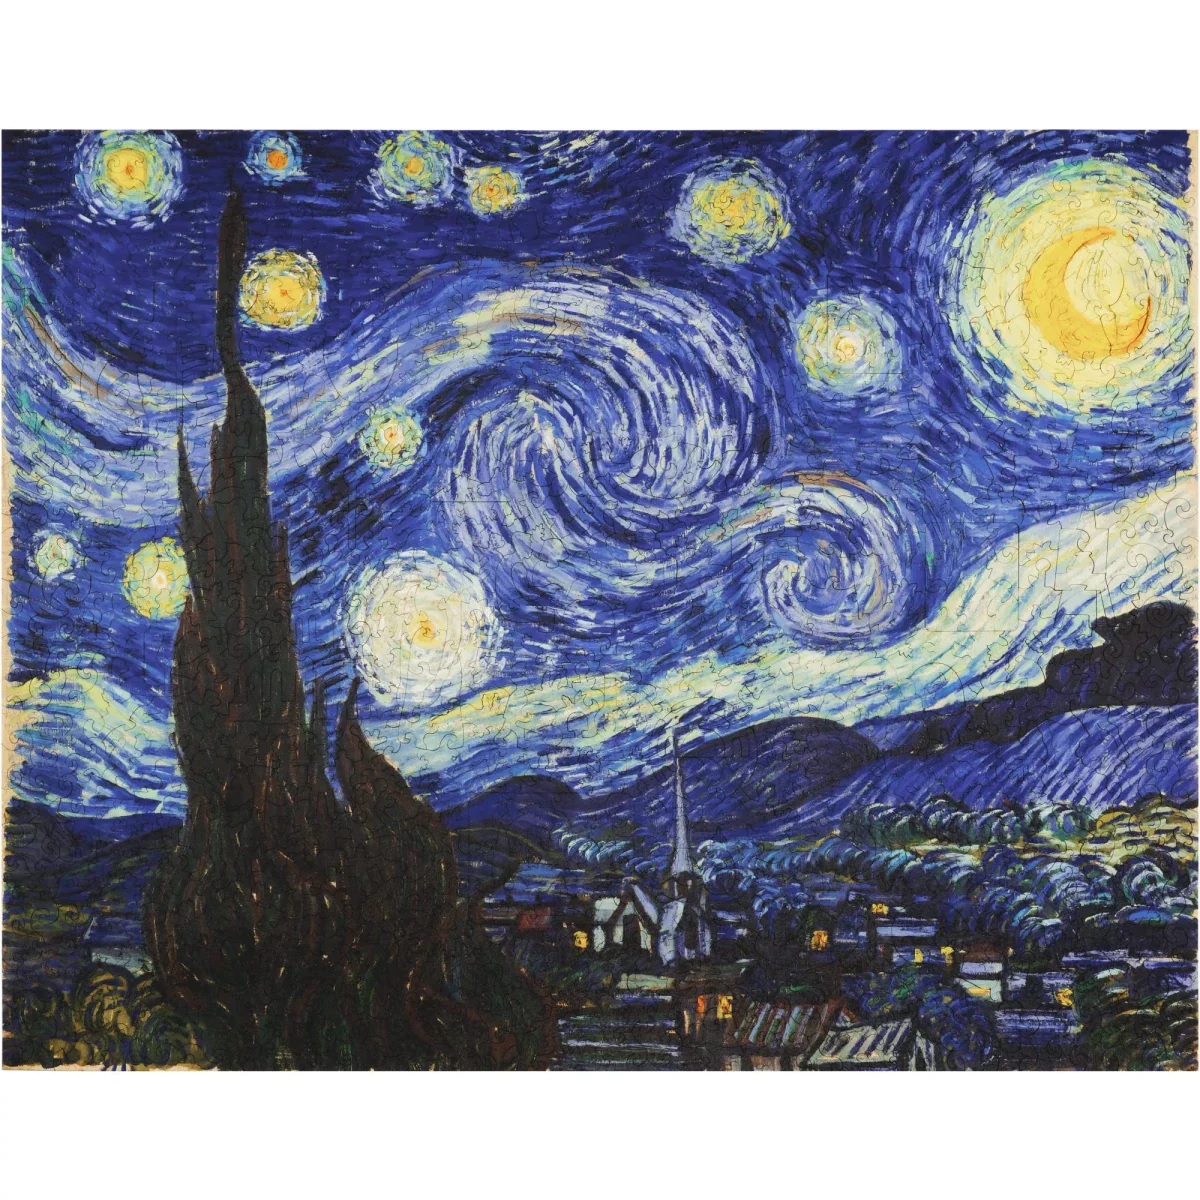 UNIDRAGON - The Starry Night - Vincent van Gogh (44 x 56 cm) Holzpuzzle - 1000 Teile